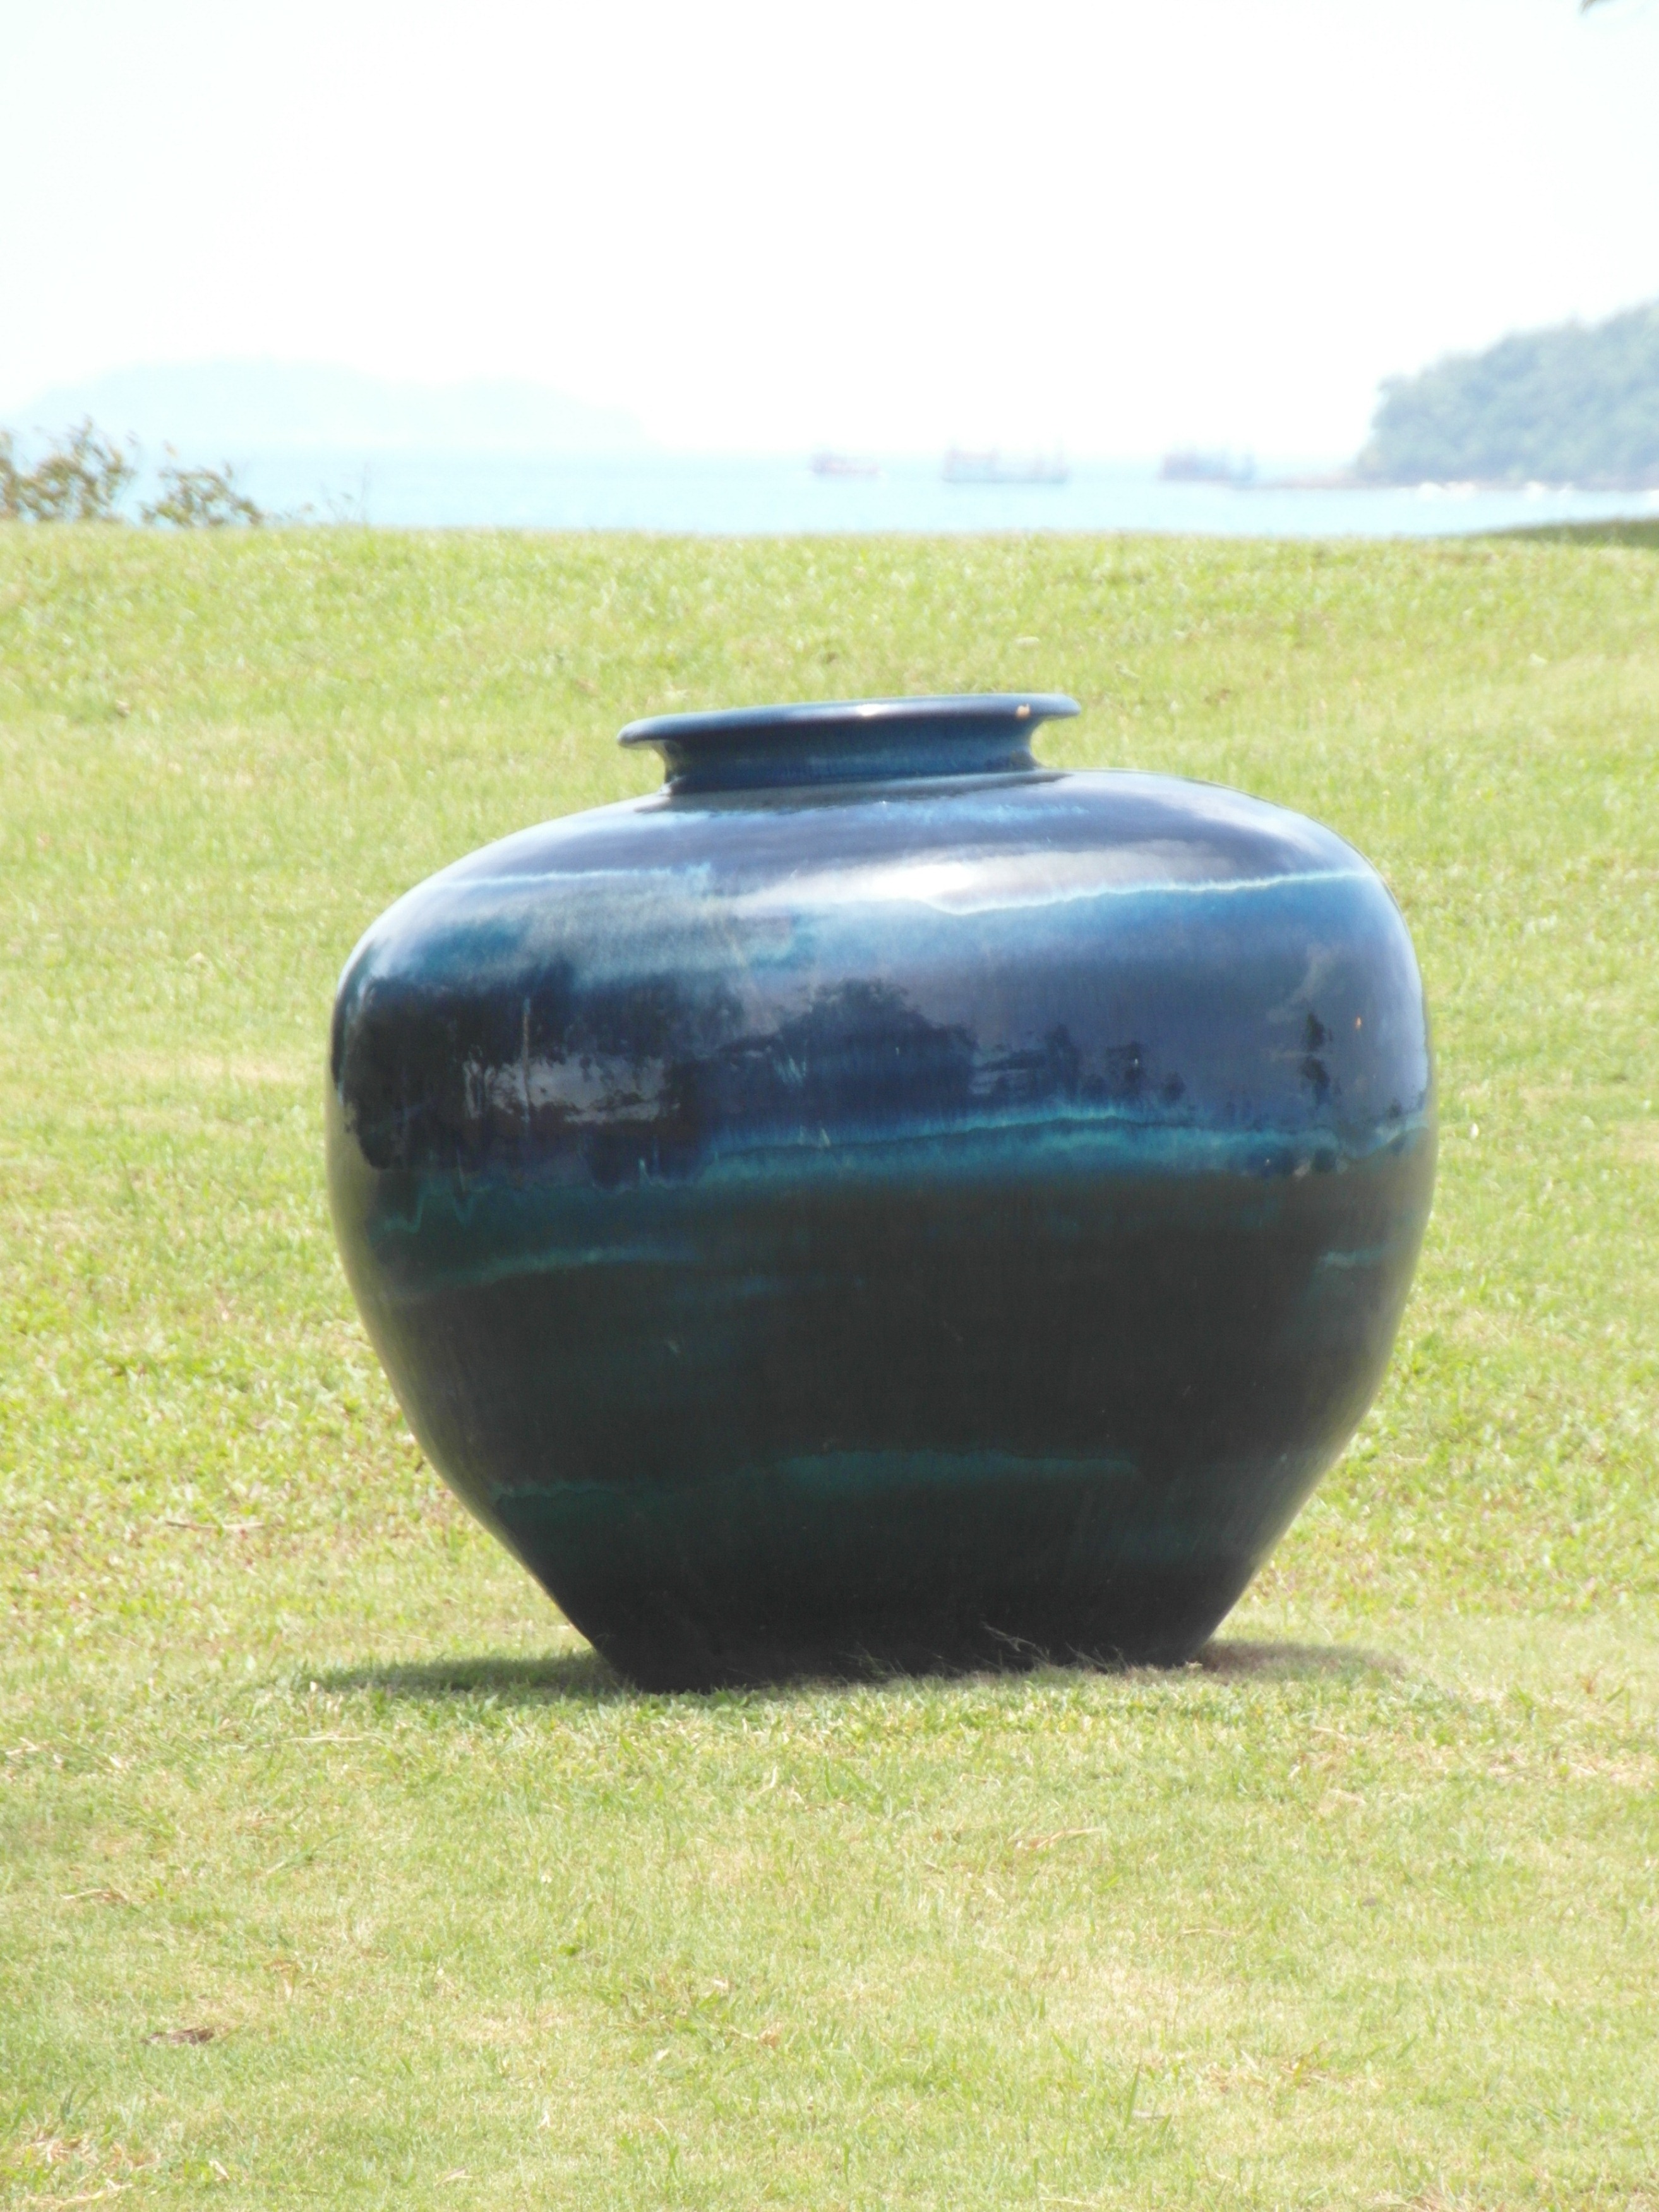 Large vase in ocean garden photo